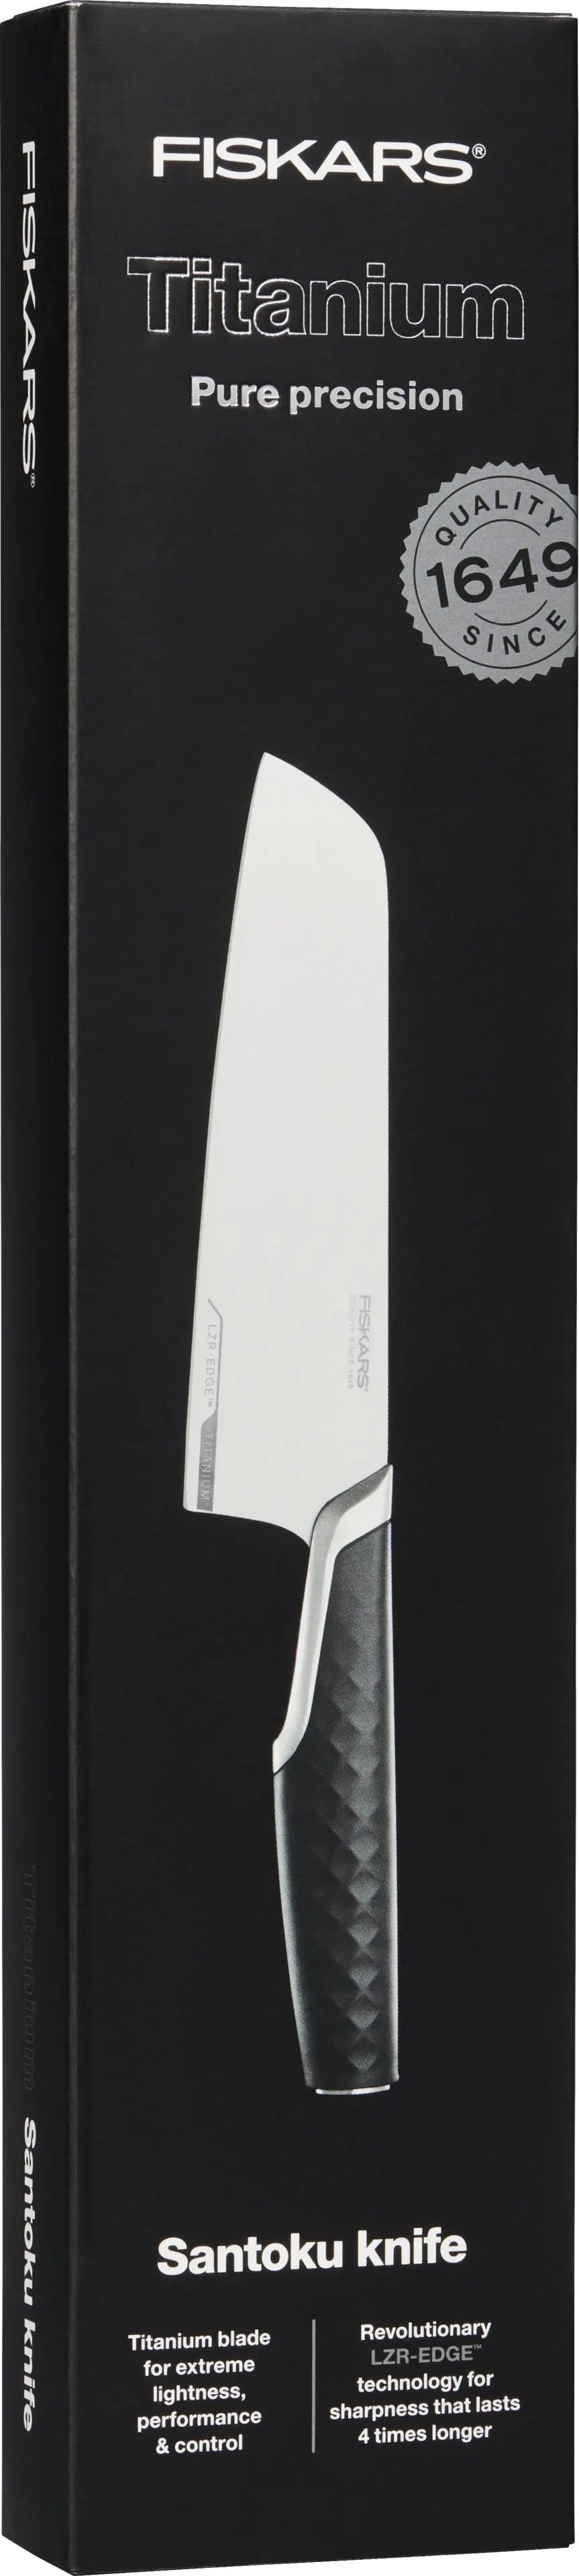 Fiskars Titanium Santoku-veitsi 34,5x7,2x3,2 cm